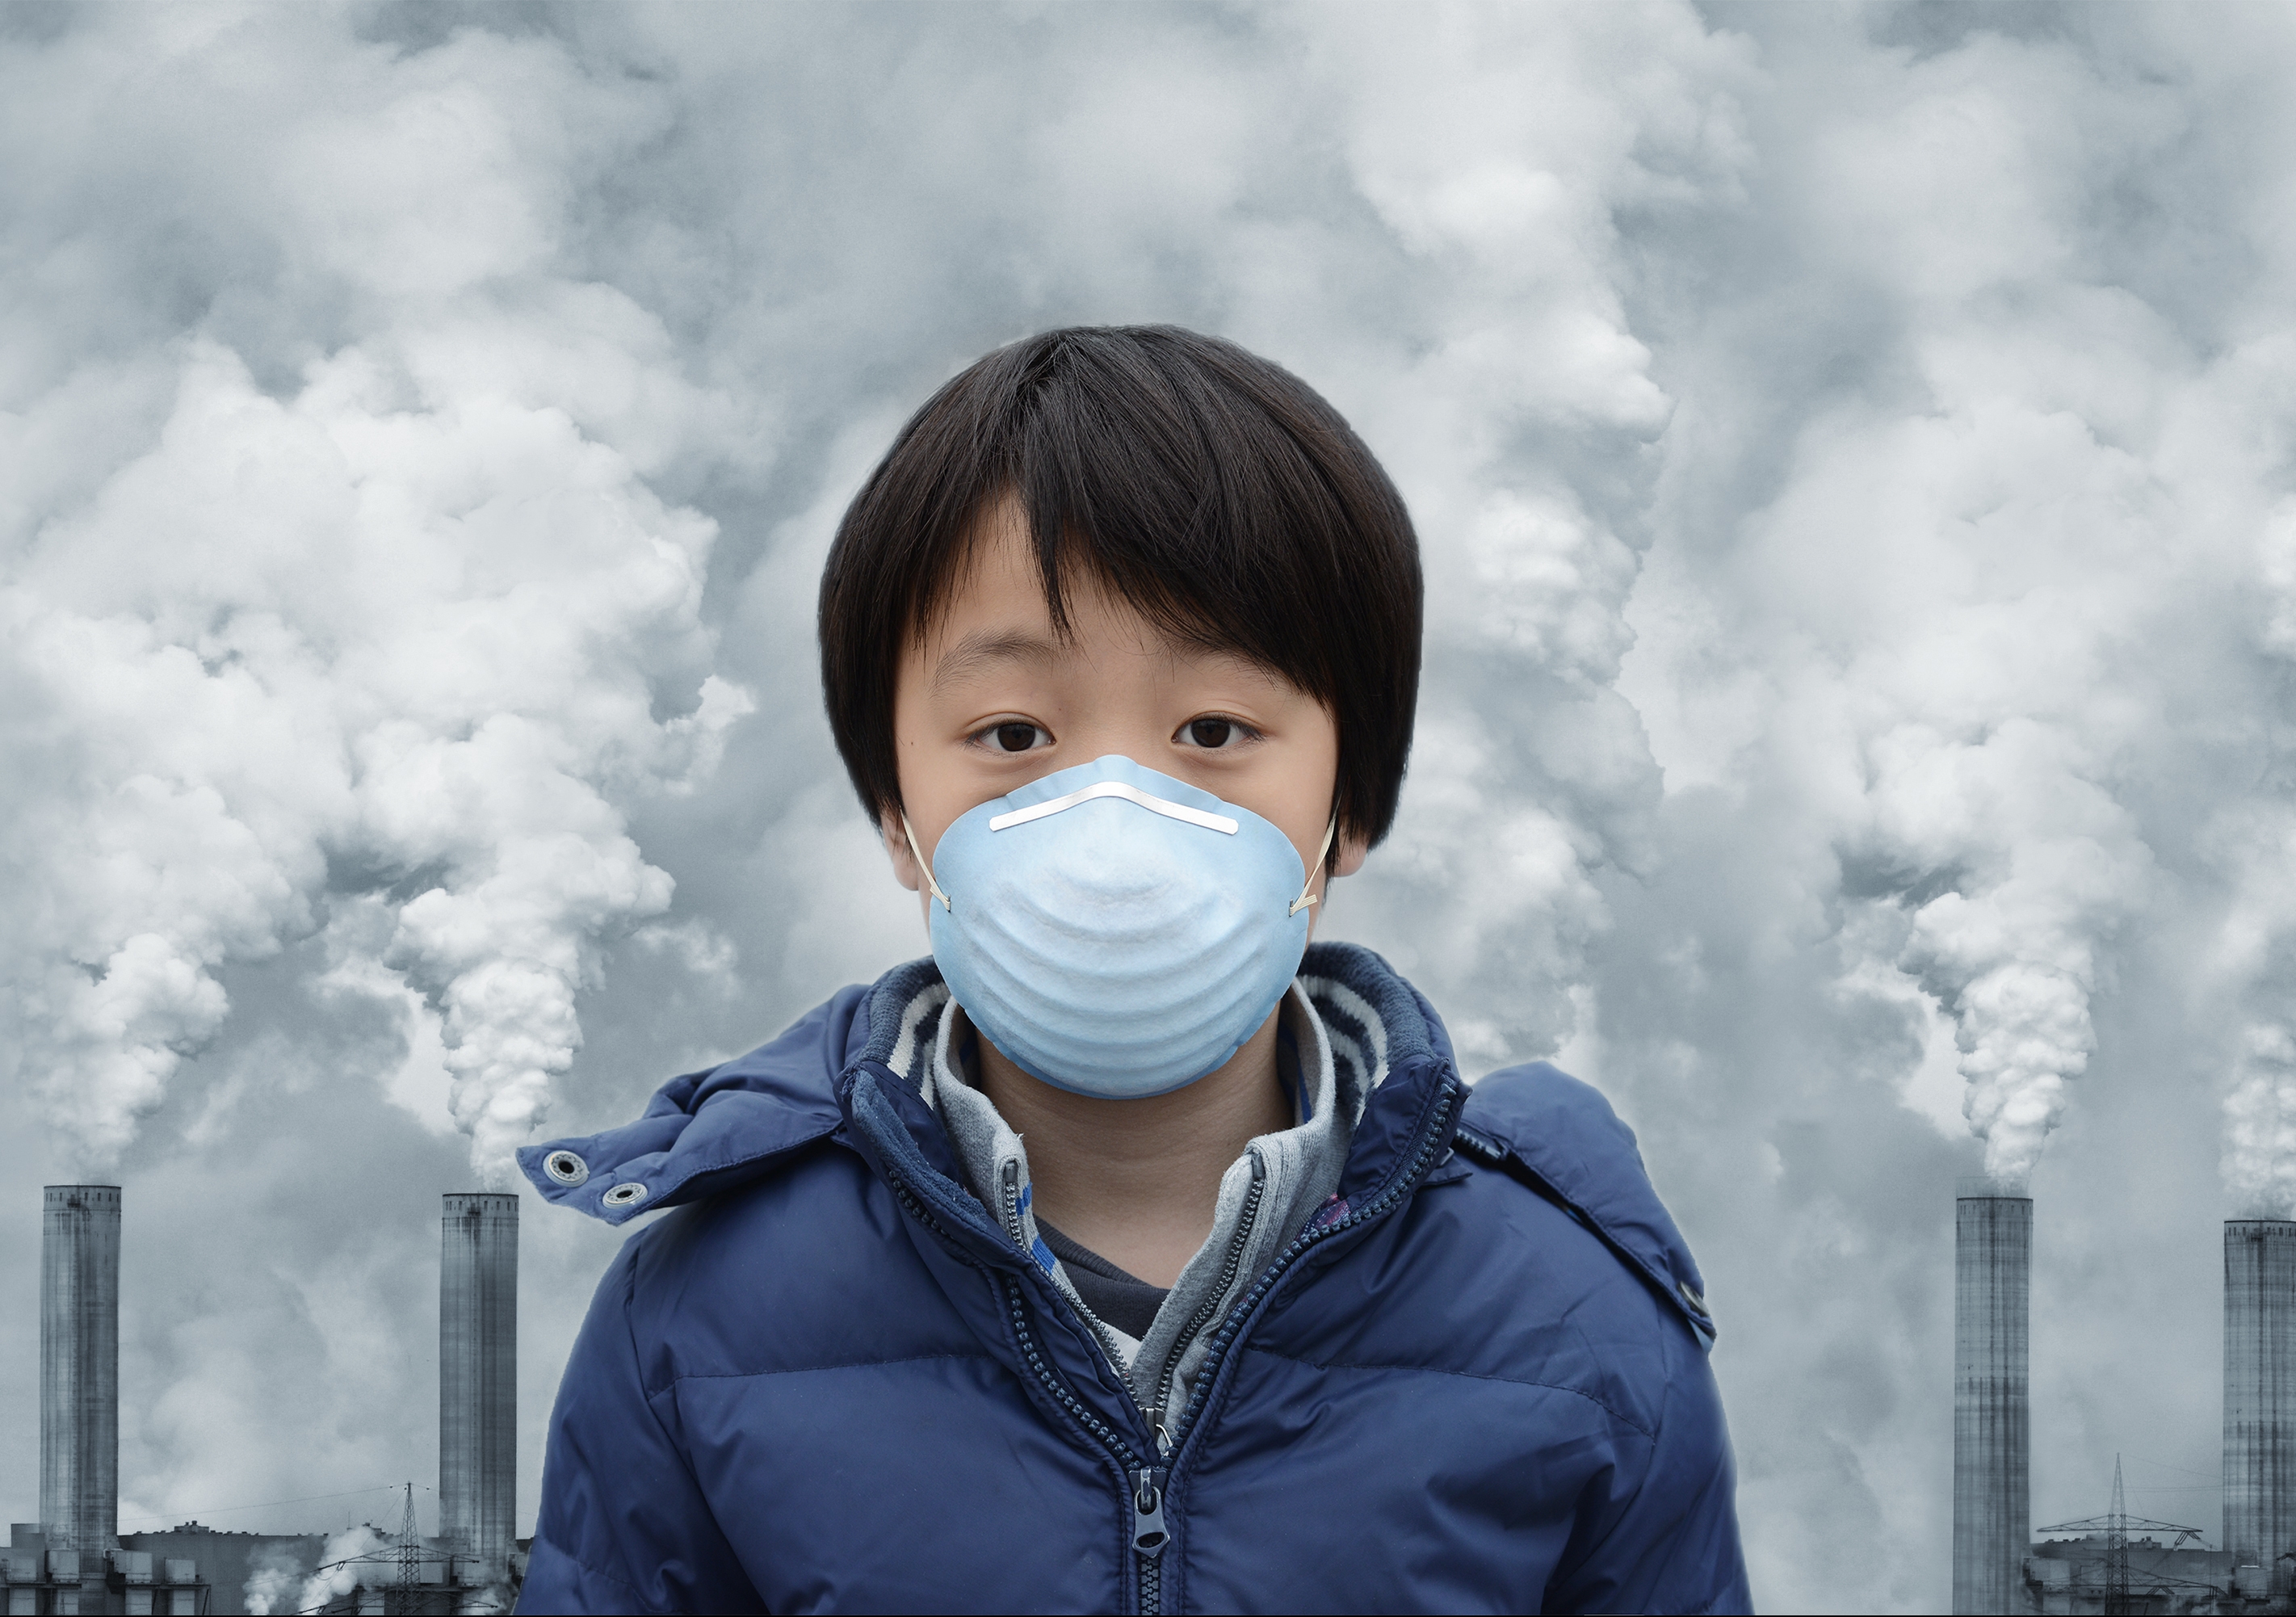 Pollution system. Загрязнение воздуха. Загрязненный воздух. Плохая экология в Китае. Атмосферное загрязнение.